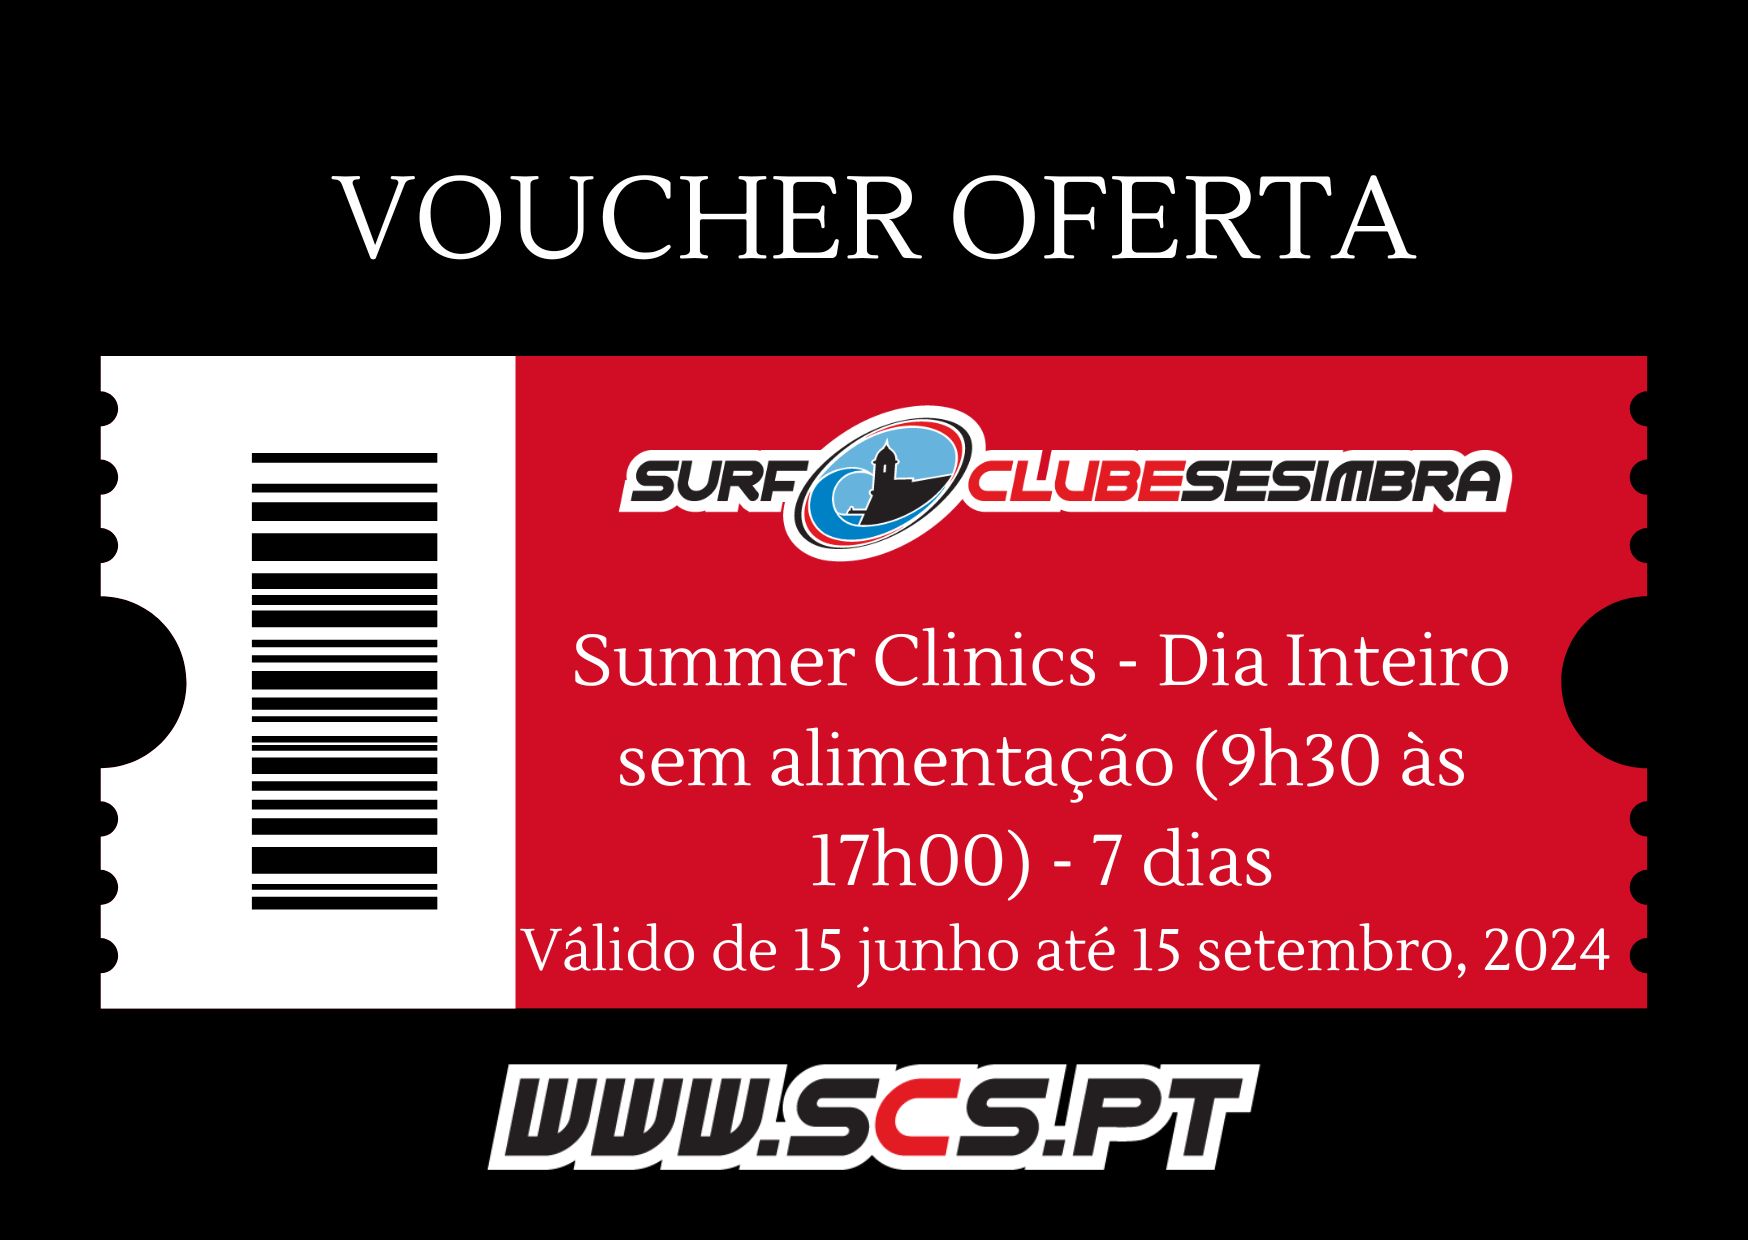 Voucher Oferta Summer Clinics - Dia Inteiro sem alimentação (9h30 às 17h00) - 7 dias